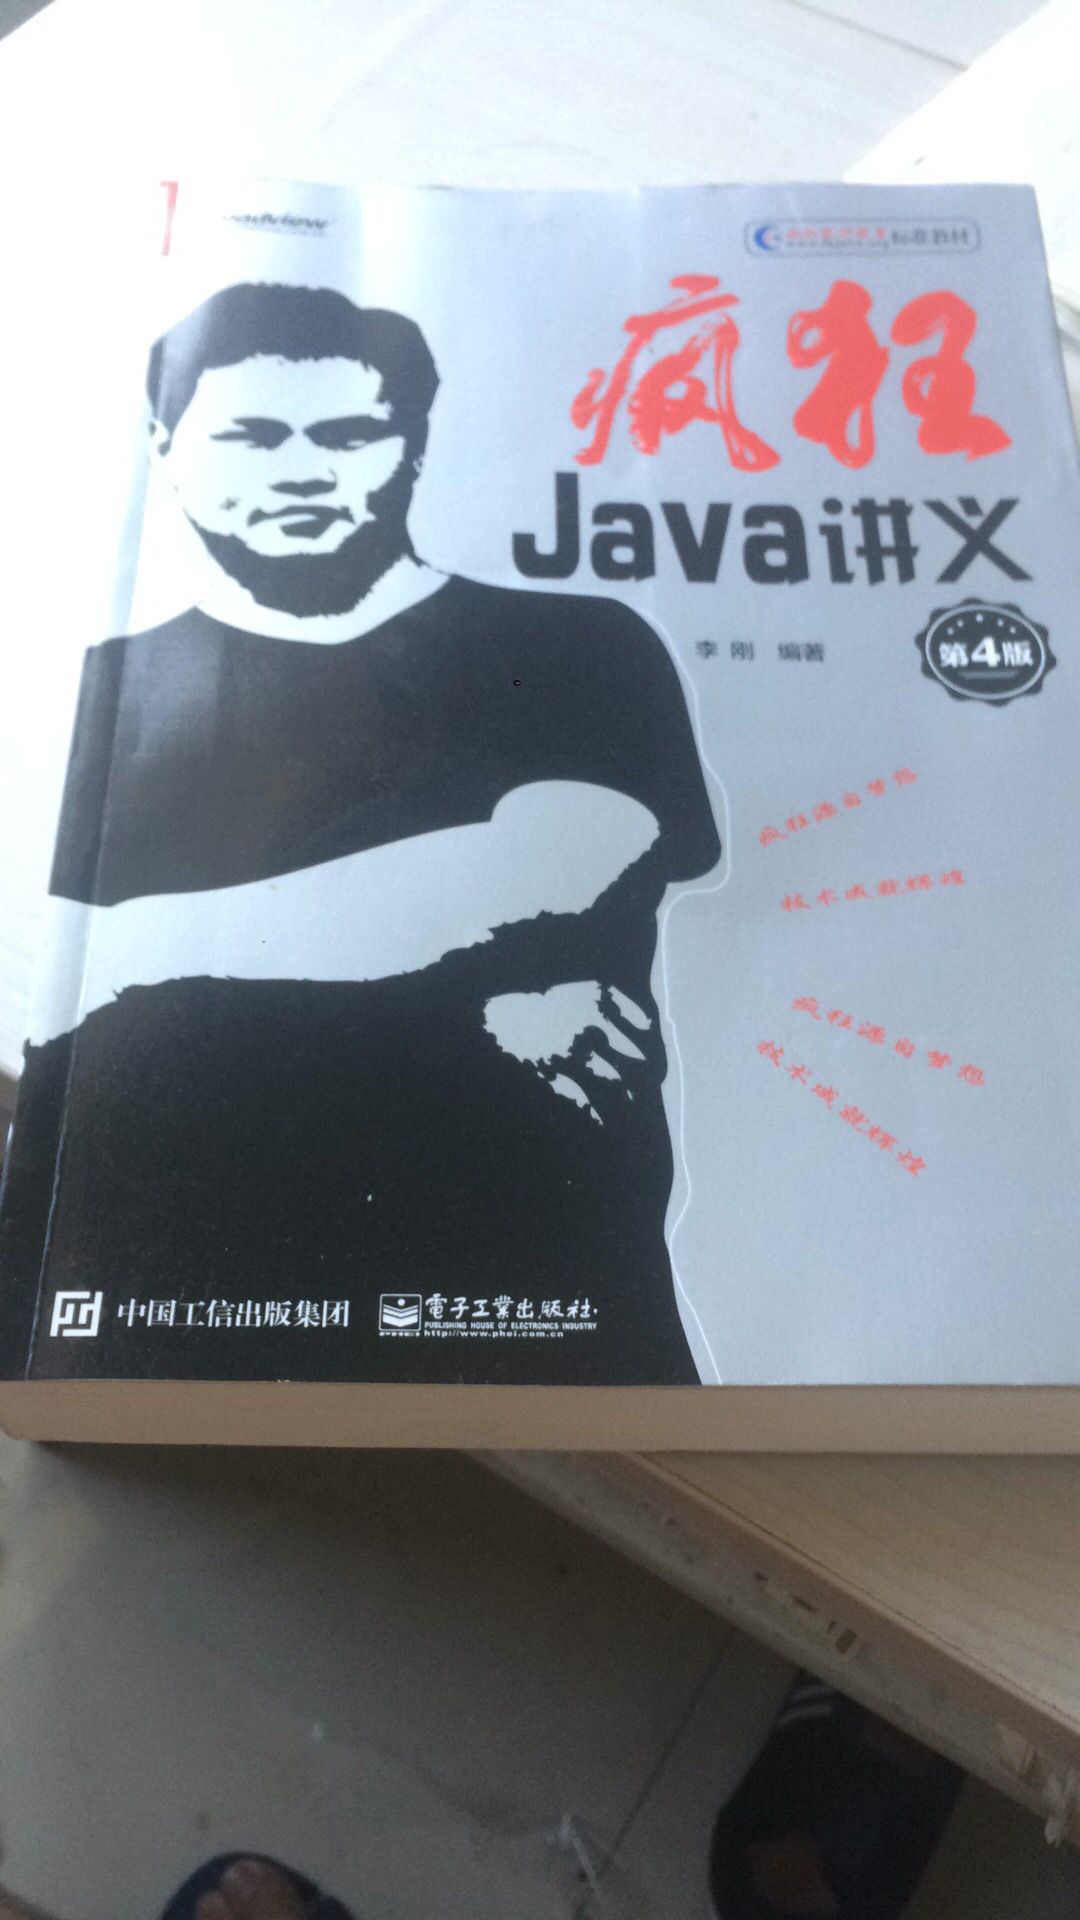 疯狂Java讲义，很好的书，就是有点皱了，但是不影响看，